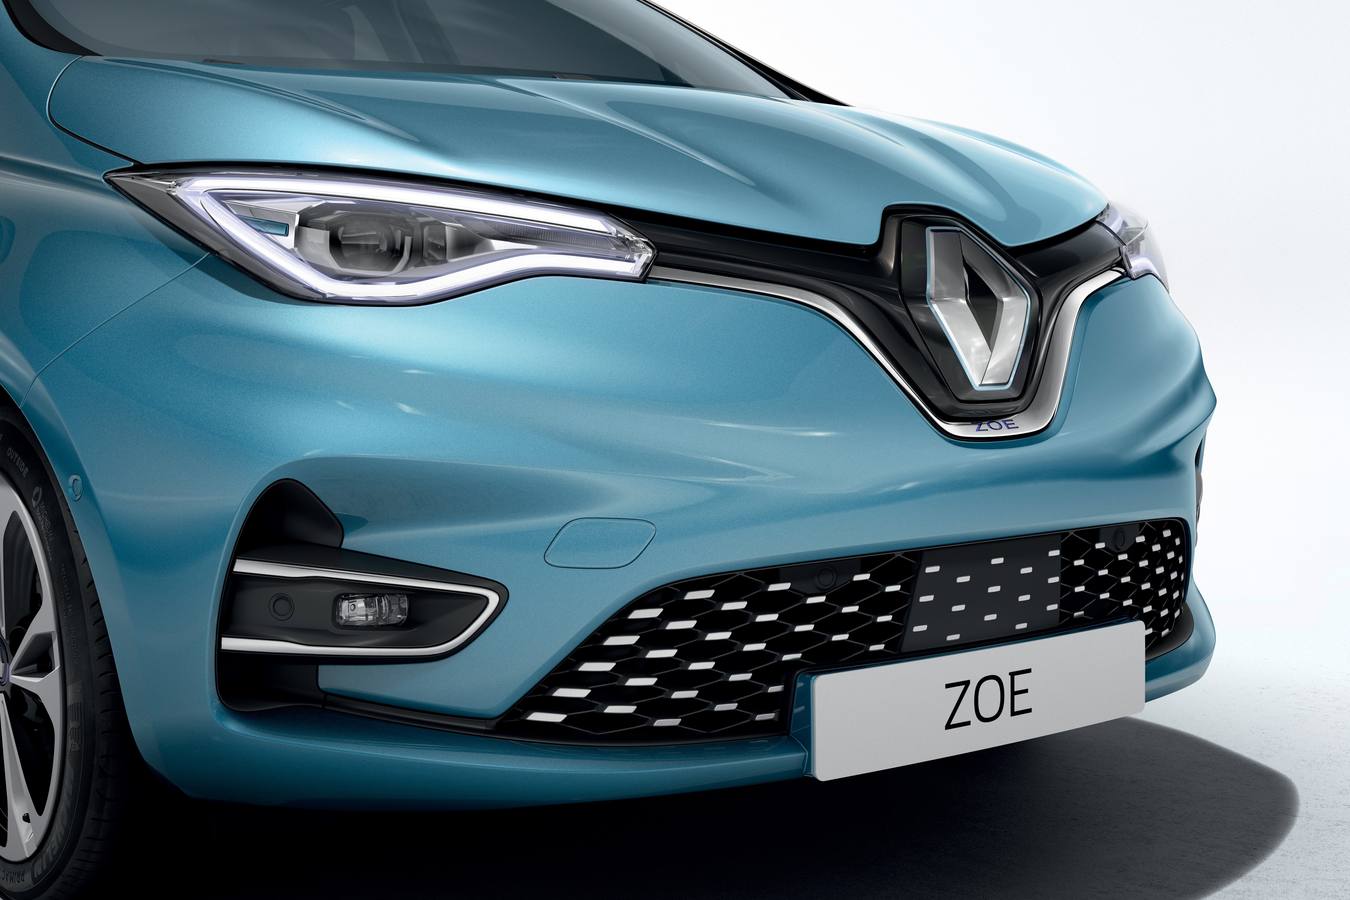 El eléctrico de Renault se renueva. La última versión, con una batería y motor más potentes, incrementa la autonomía hasta 390 kilómetros y mejora las prestaciones.